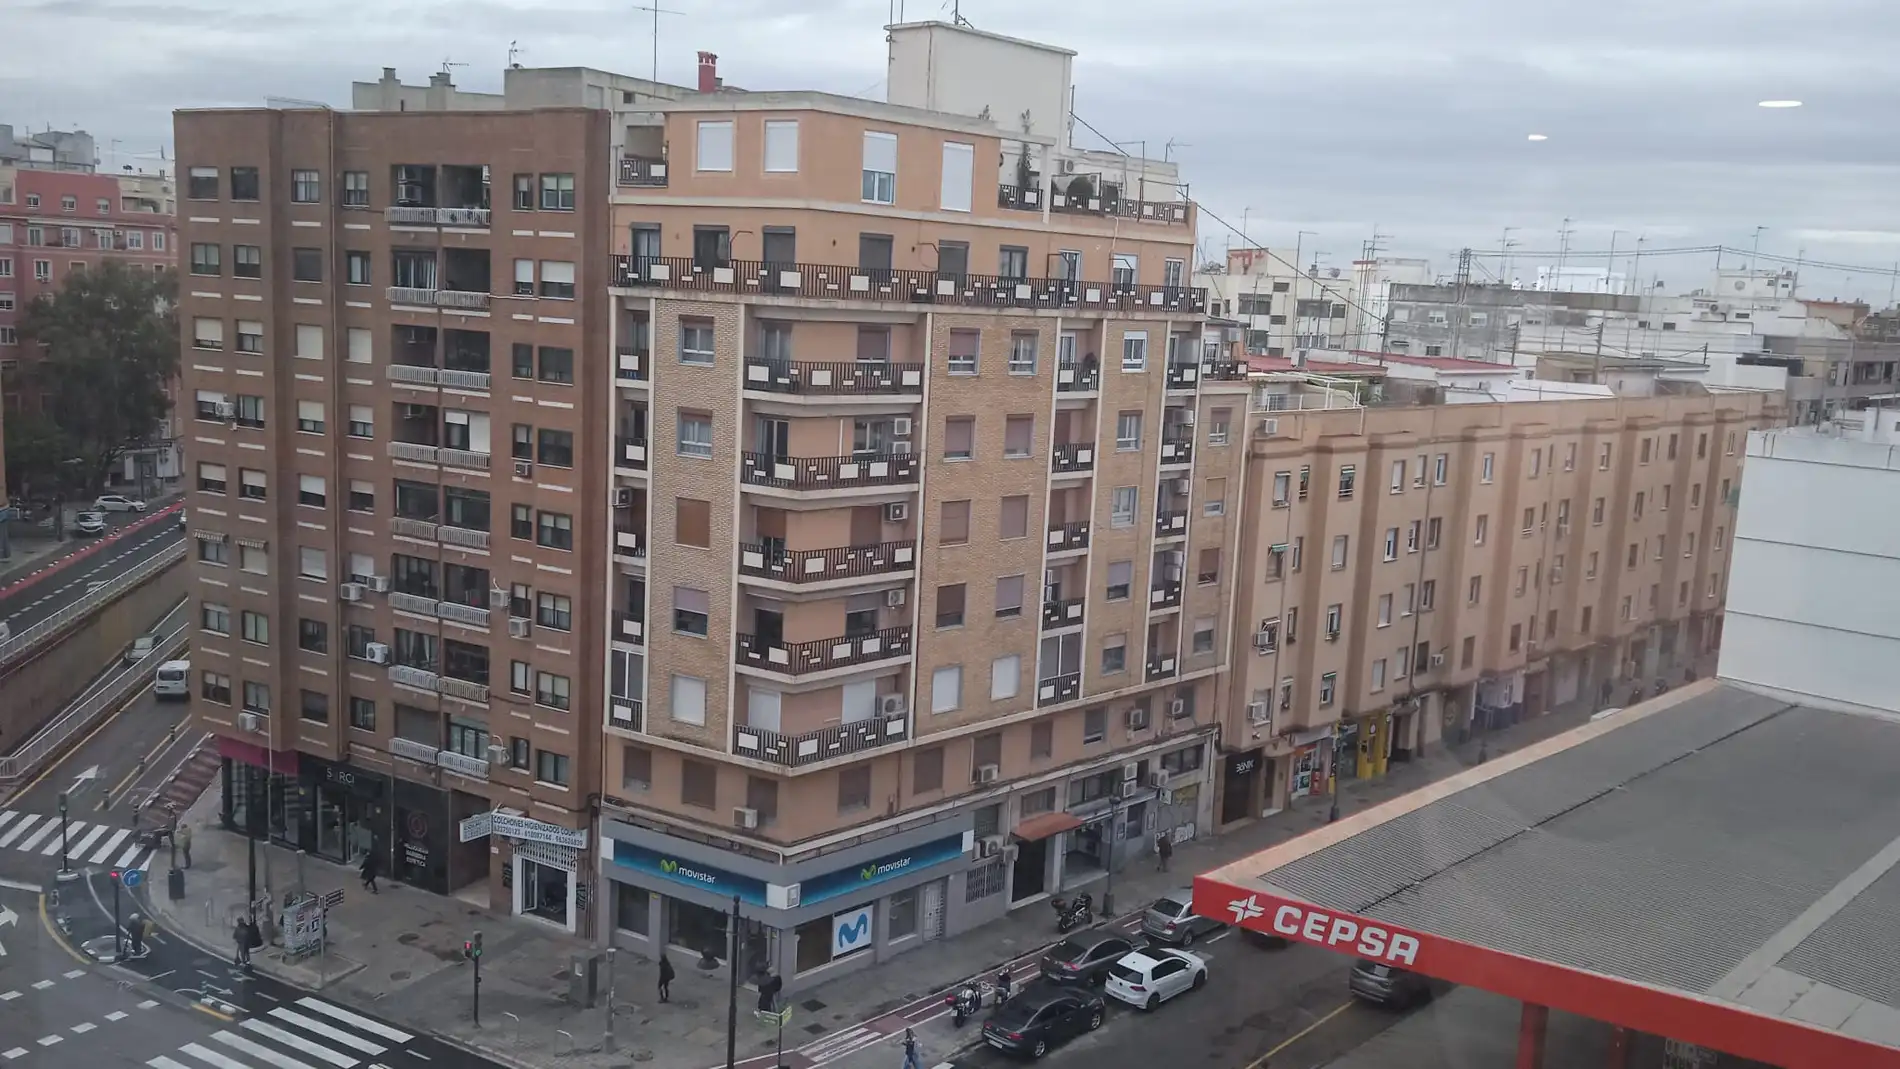 Bloque sde viviendas en València